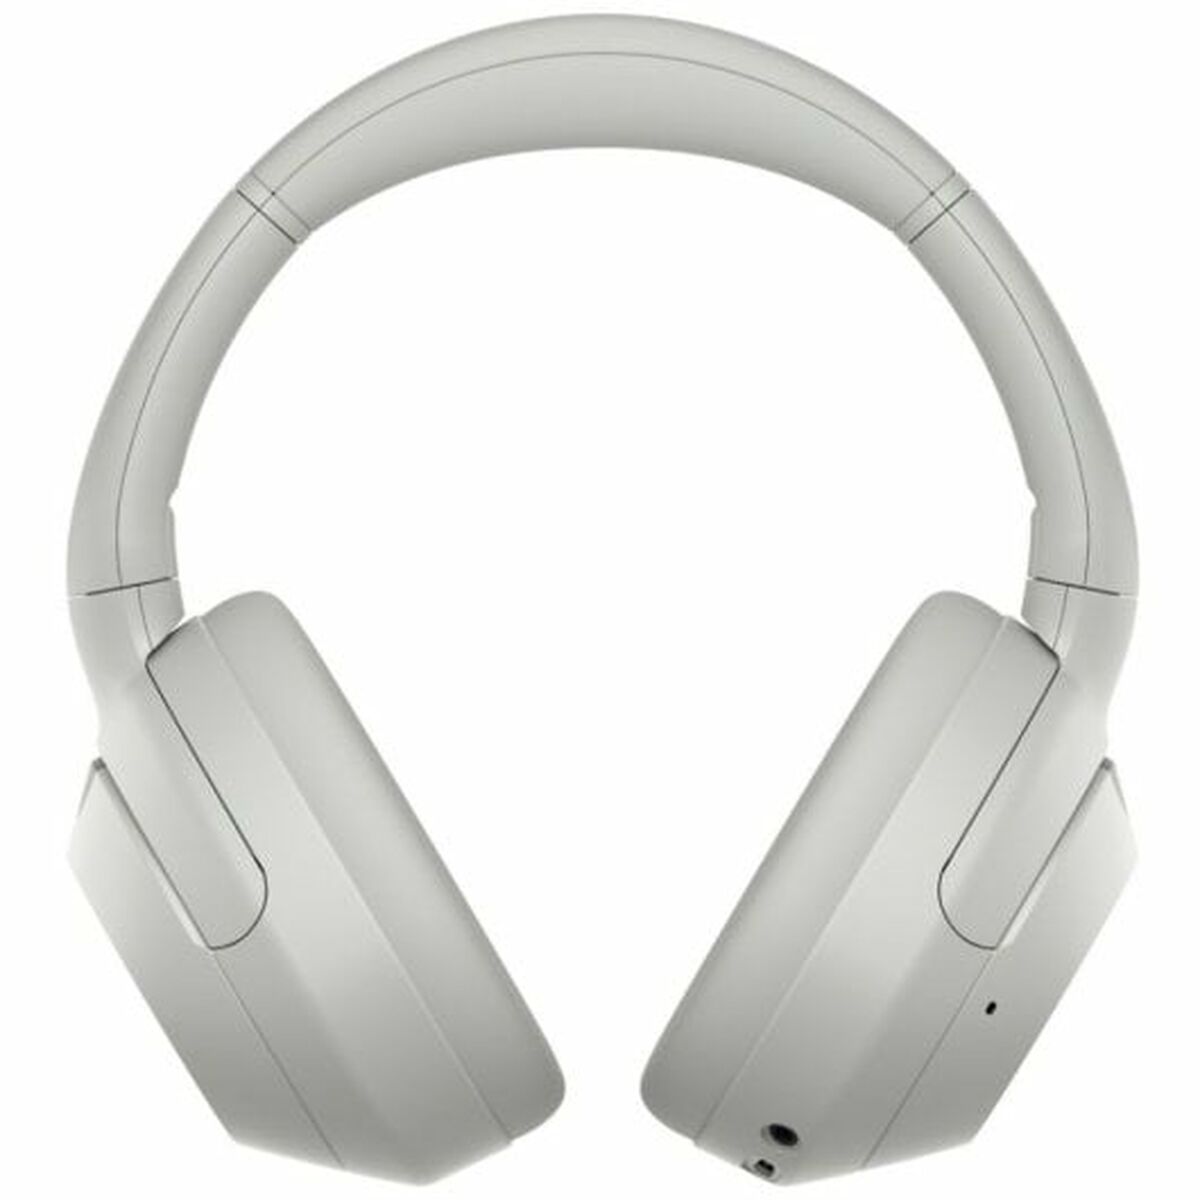 Auricolari Bluetooth Sony ULT Wear Bianco